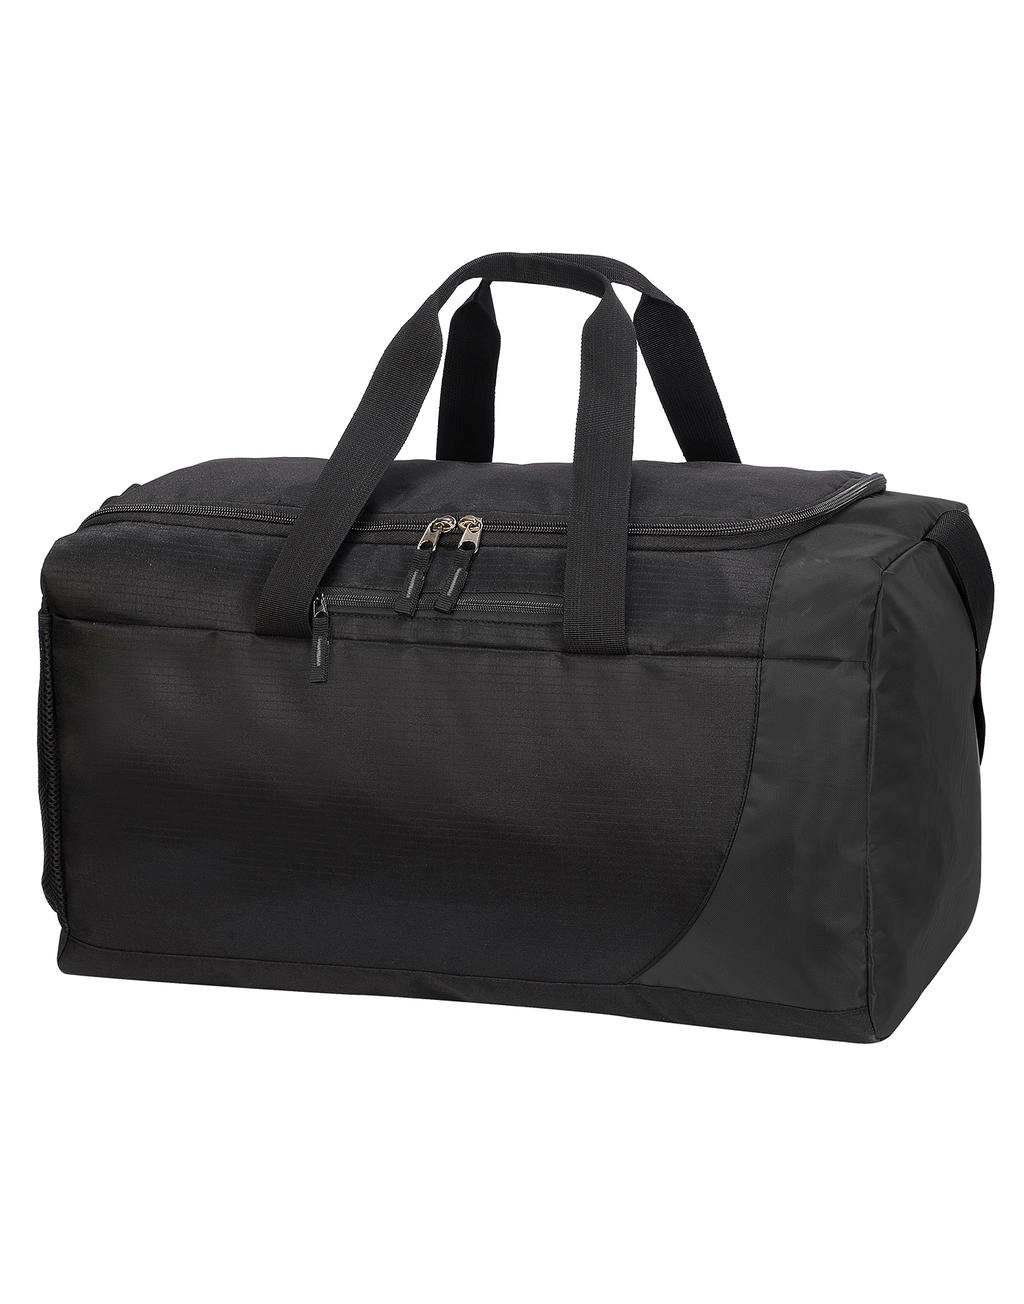 Naxos Sports Kit Bag zum Besticken und Bedrucken in der Farbe Black/Charcoal mit Ihren Logo, Schriftzug oder Motiv.